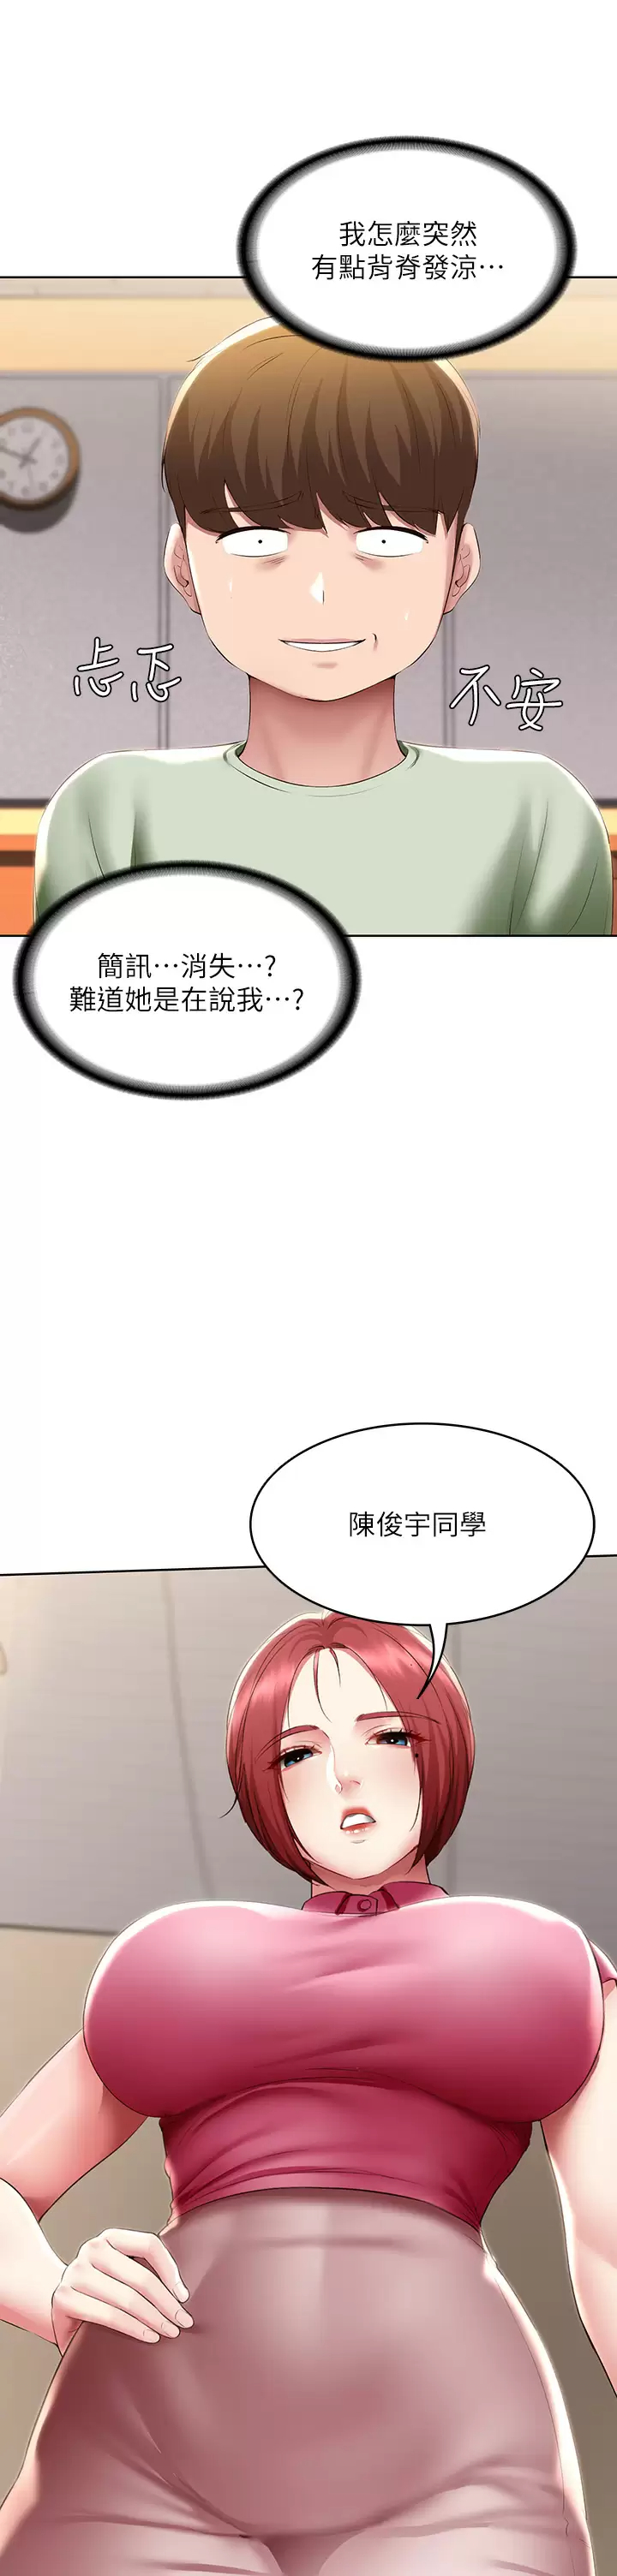 韩国污漫画 寄宿日記 第108话和性感女教授一对一补课 23